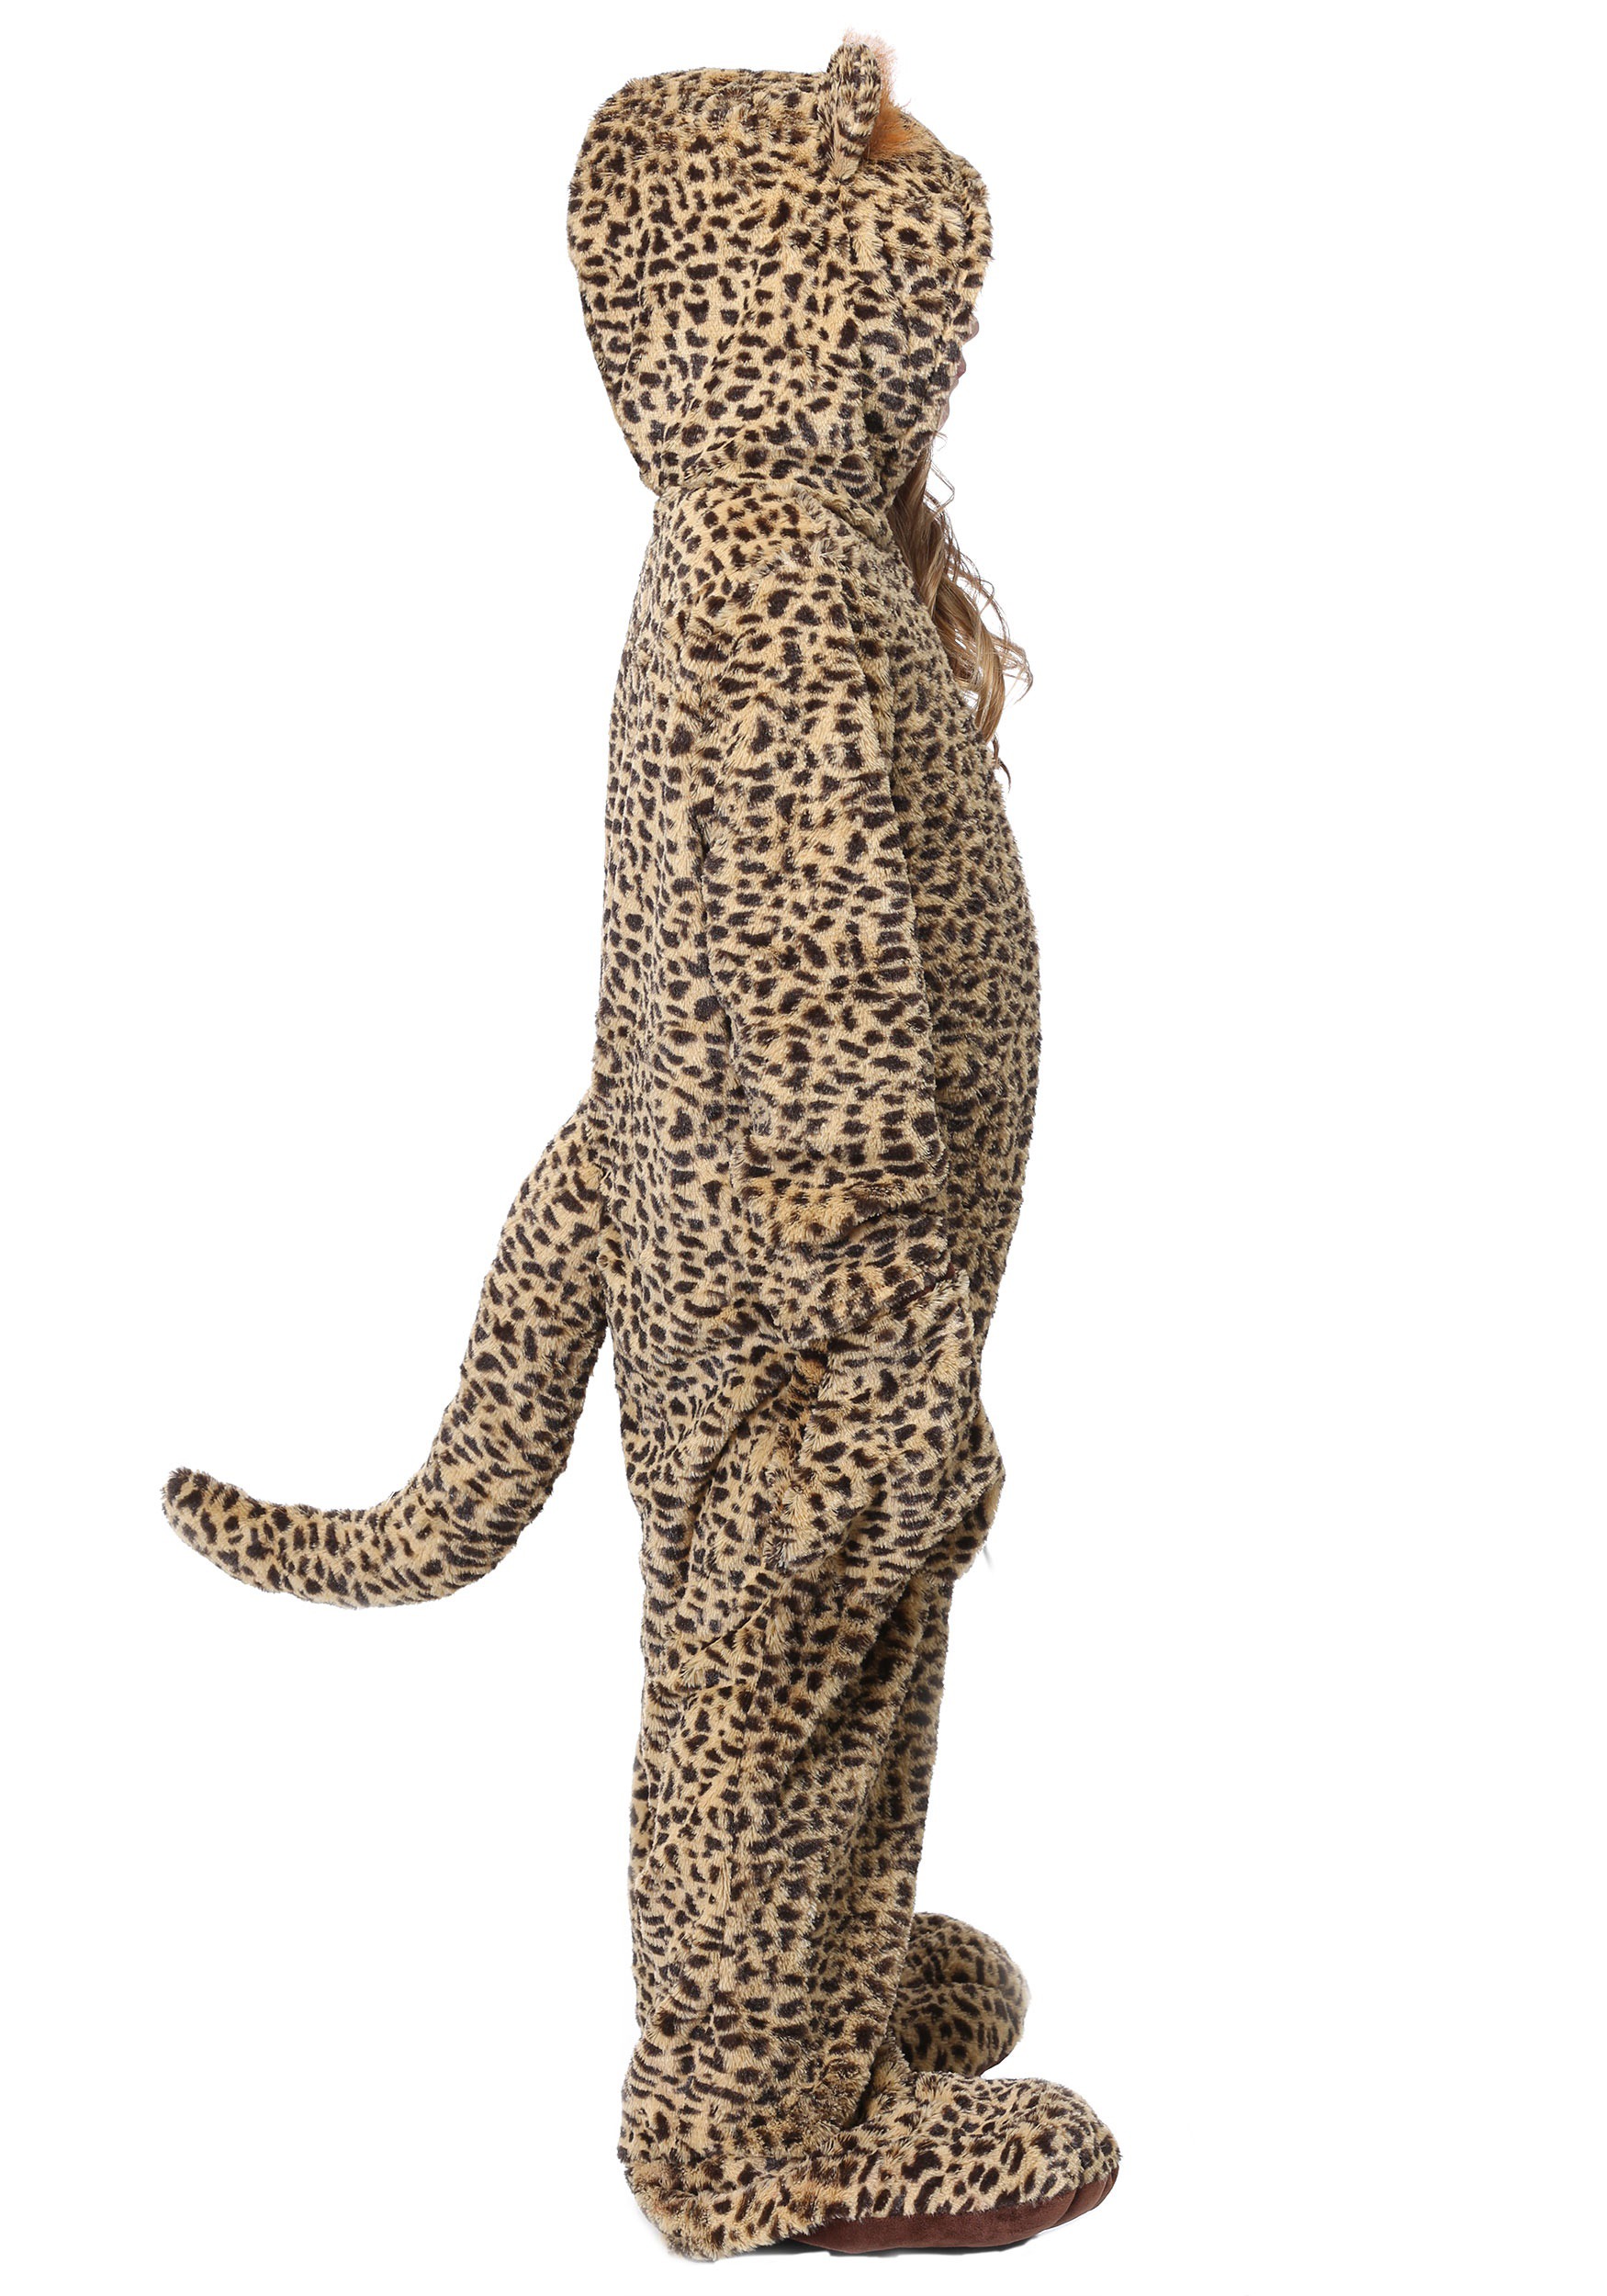 Premium Leopard Costume For Kids